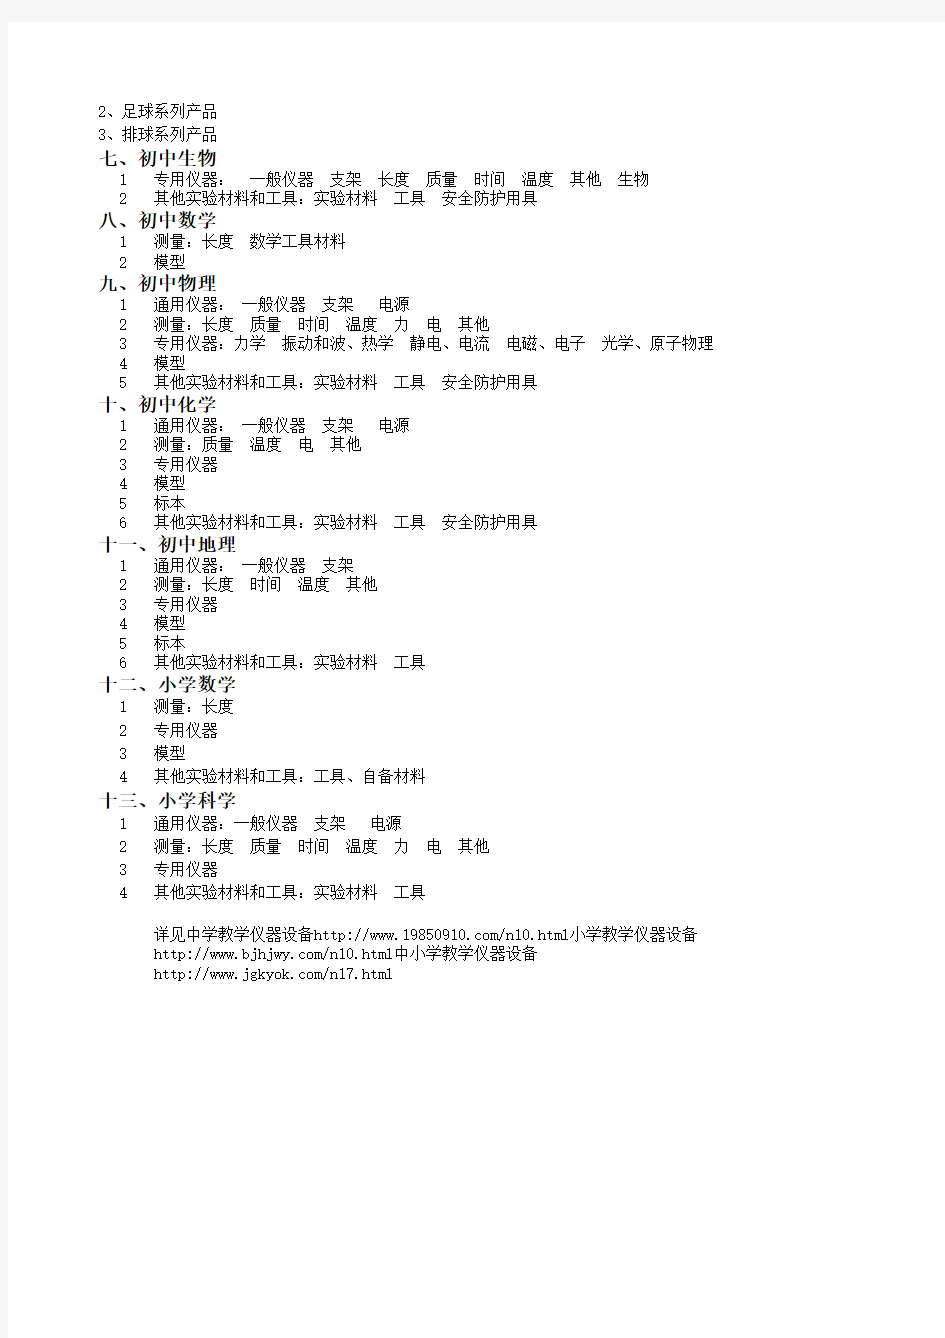 2012年新课标普教教学仪器目录(最新编号)